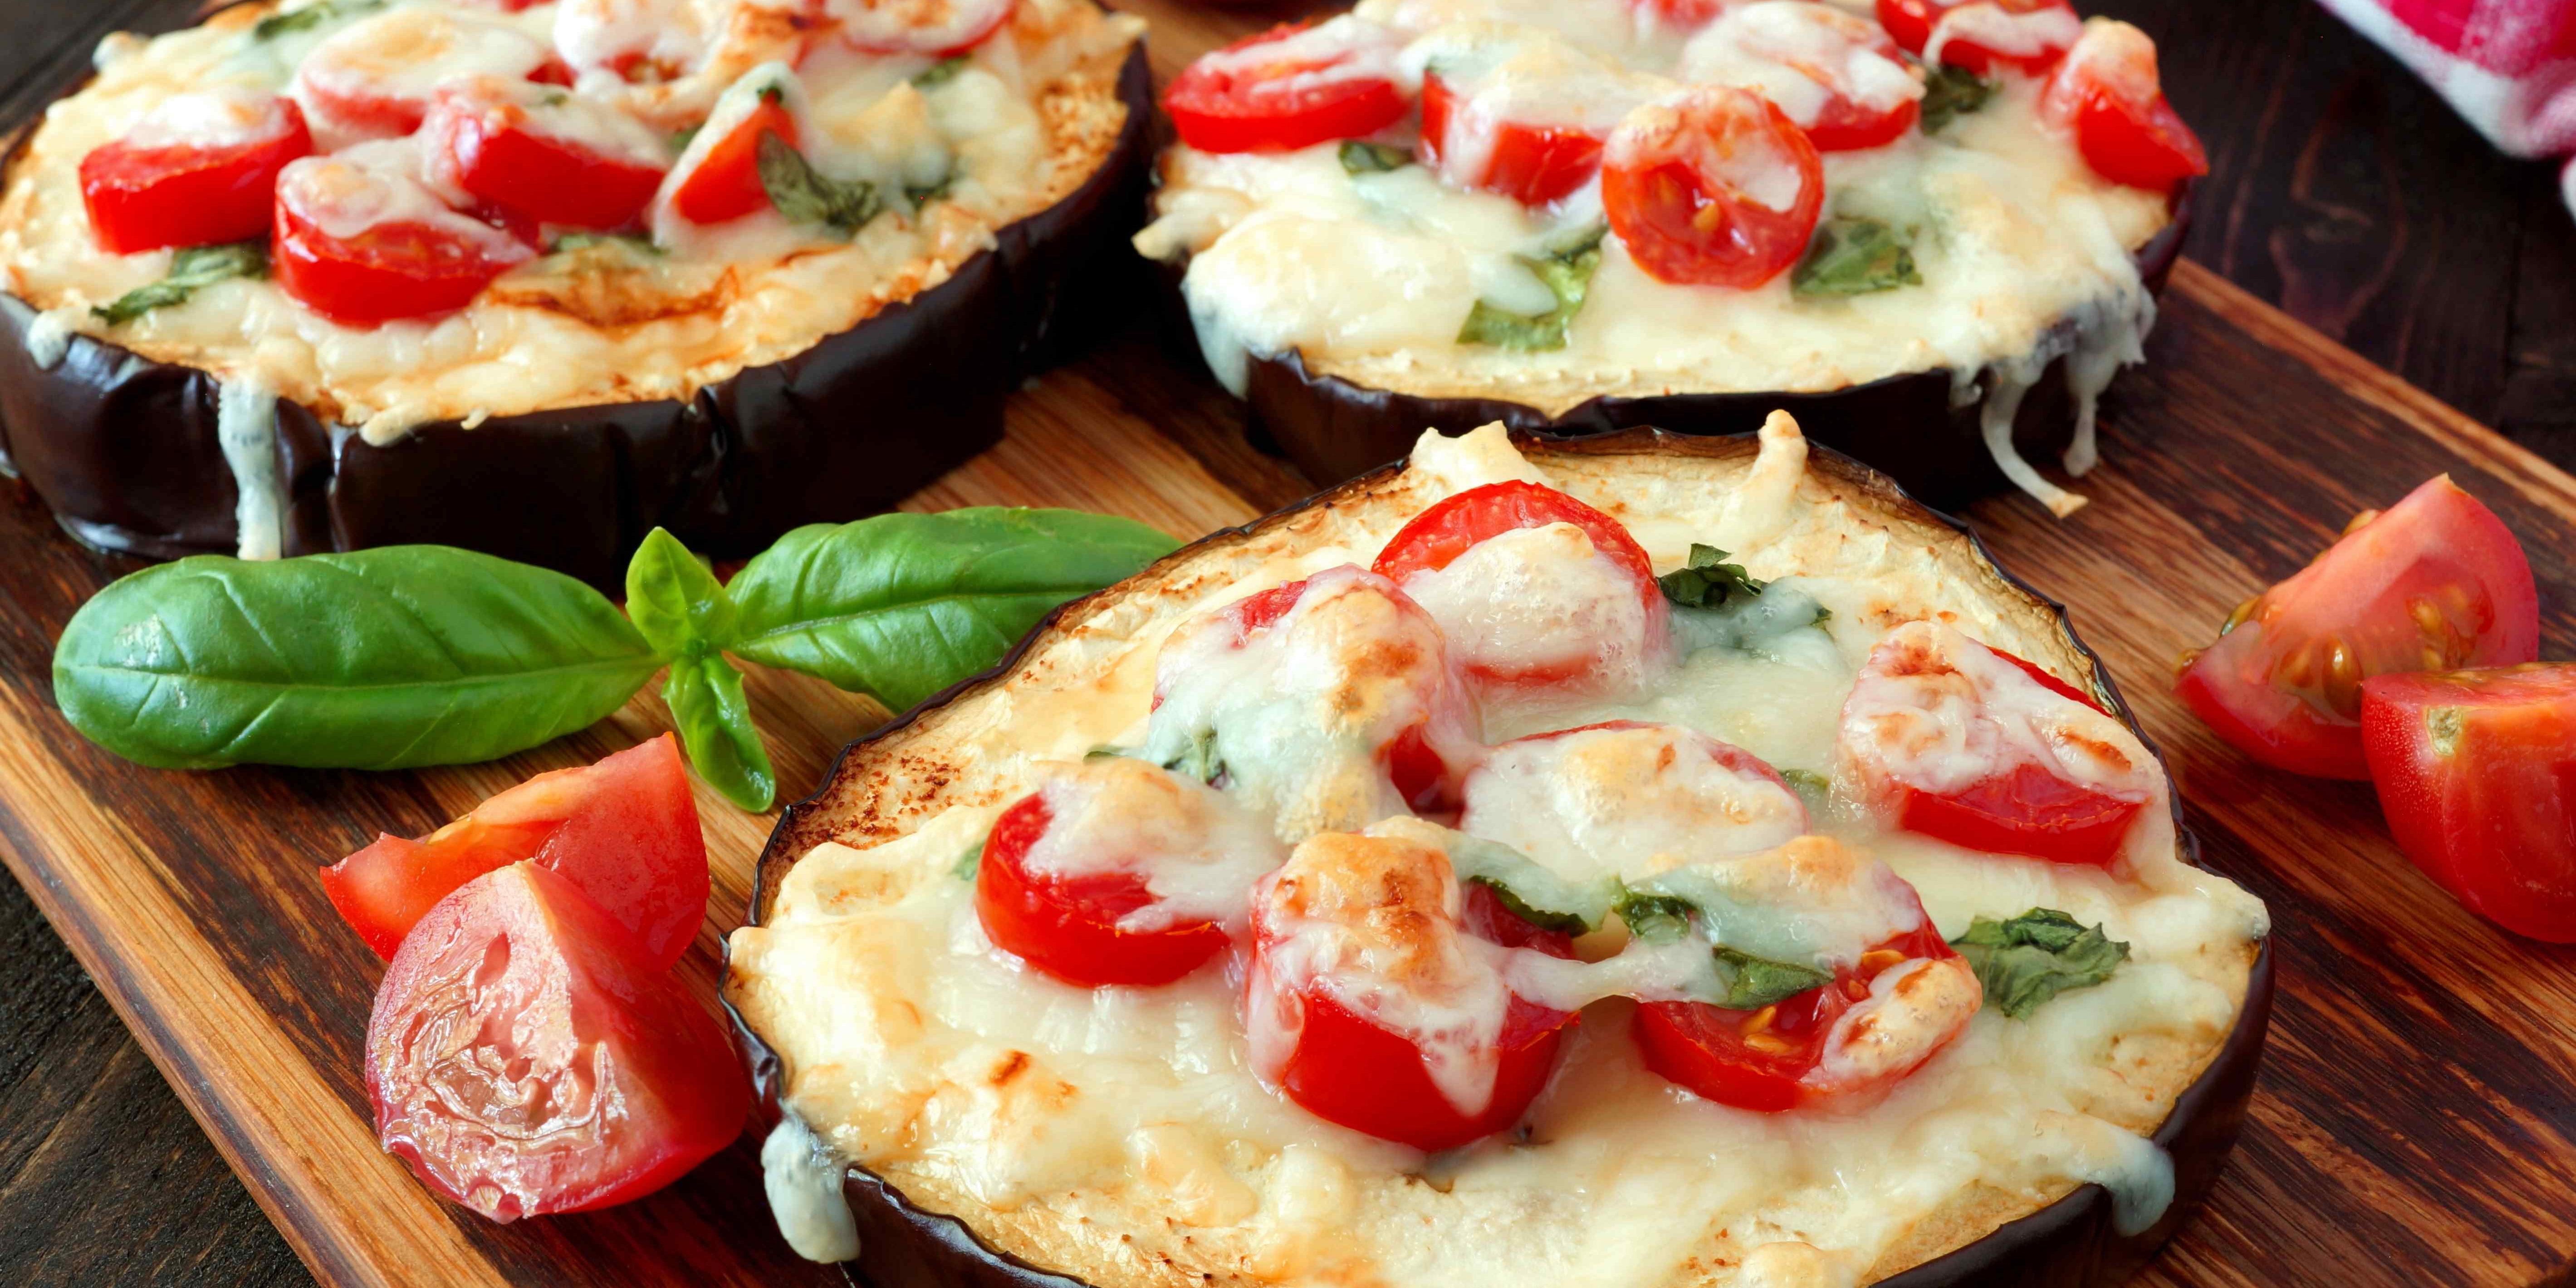 Mini Eggplant Pizza Bites ShortNSweet Life's Short, So Make It Sweet